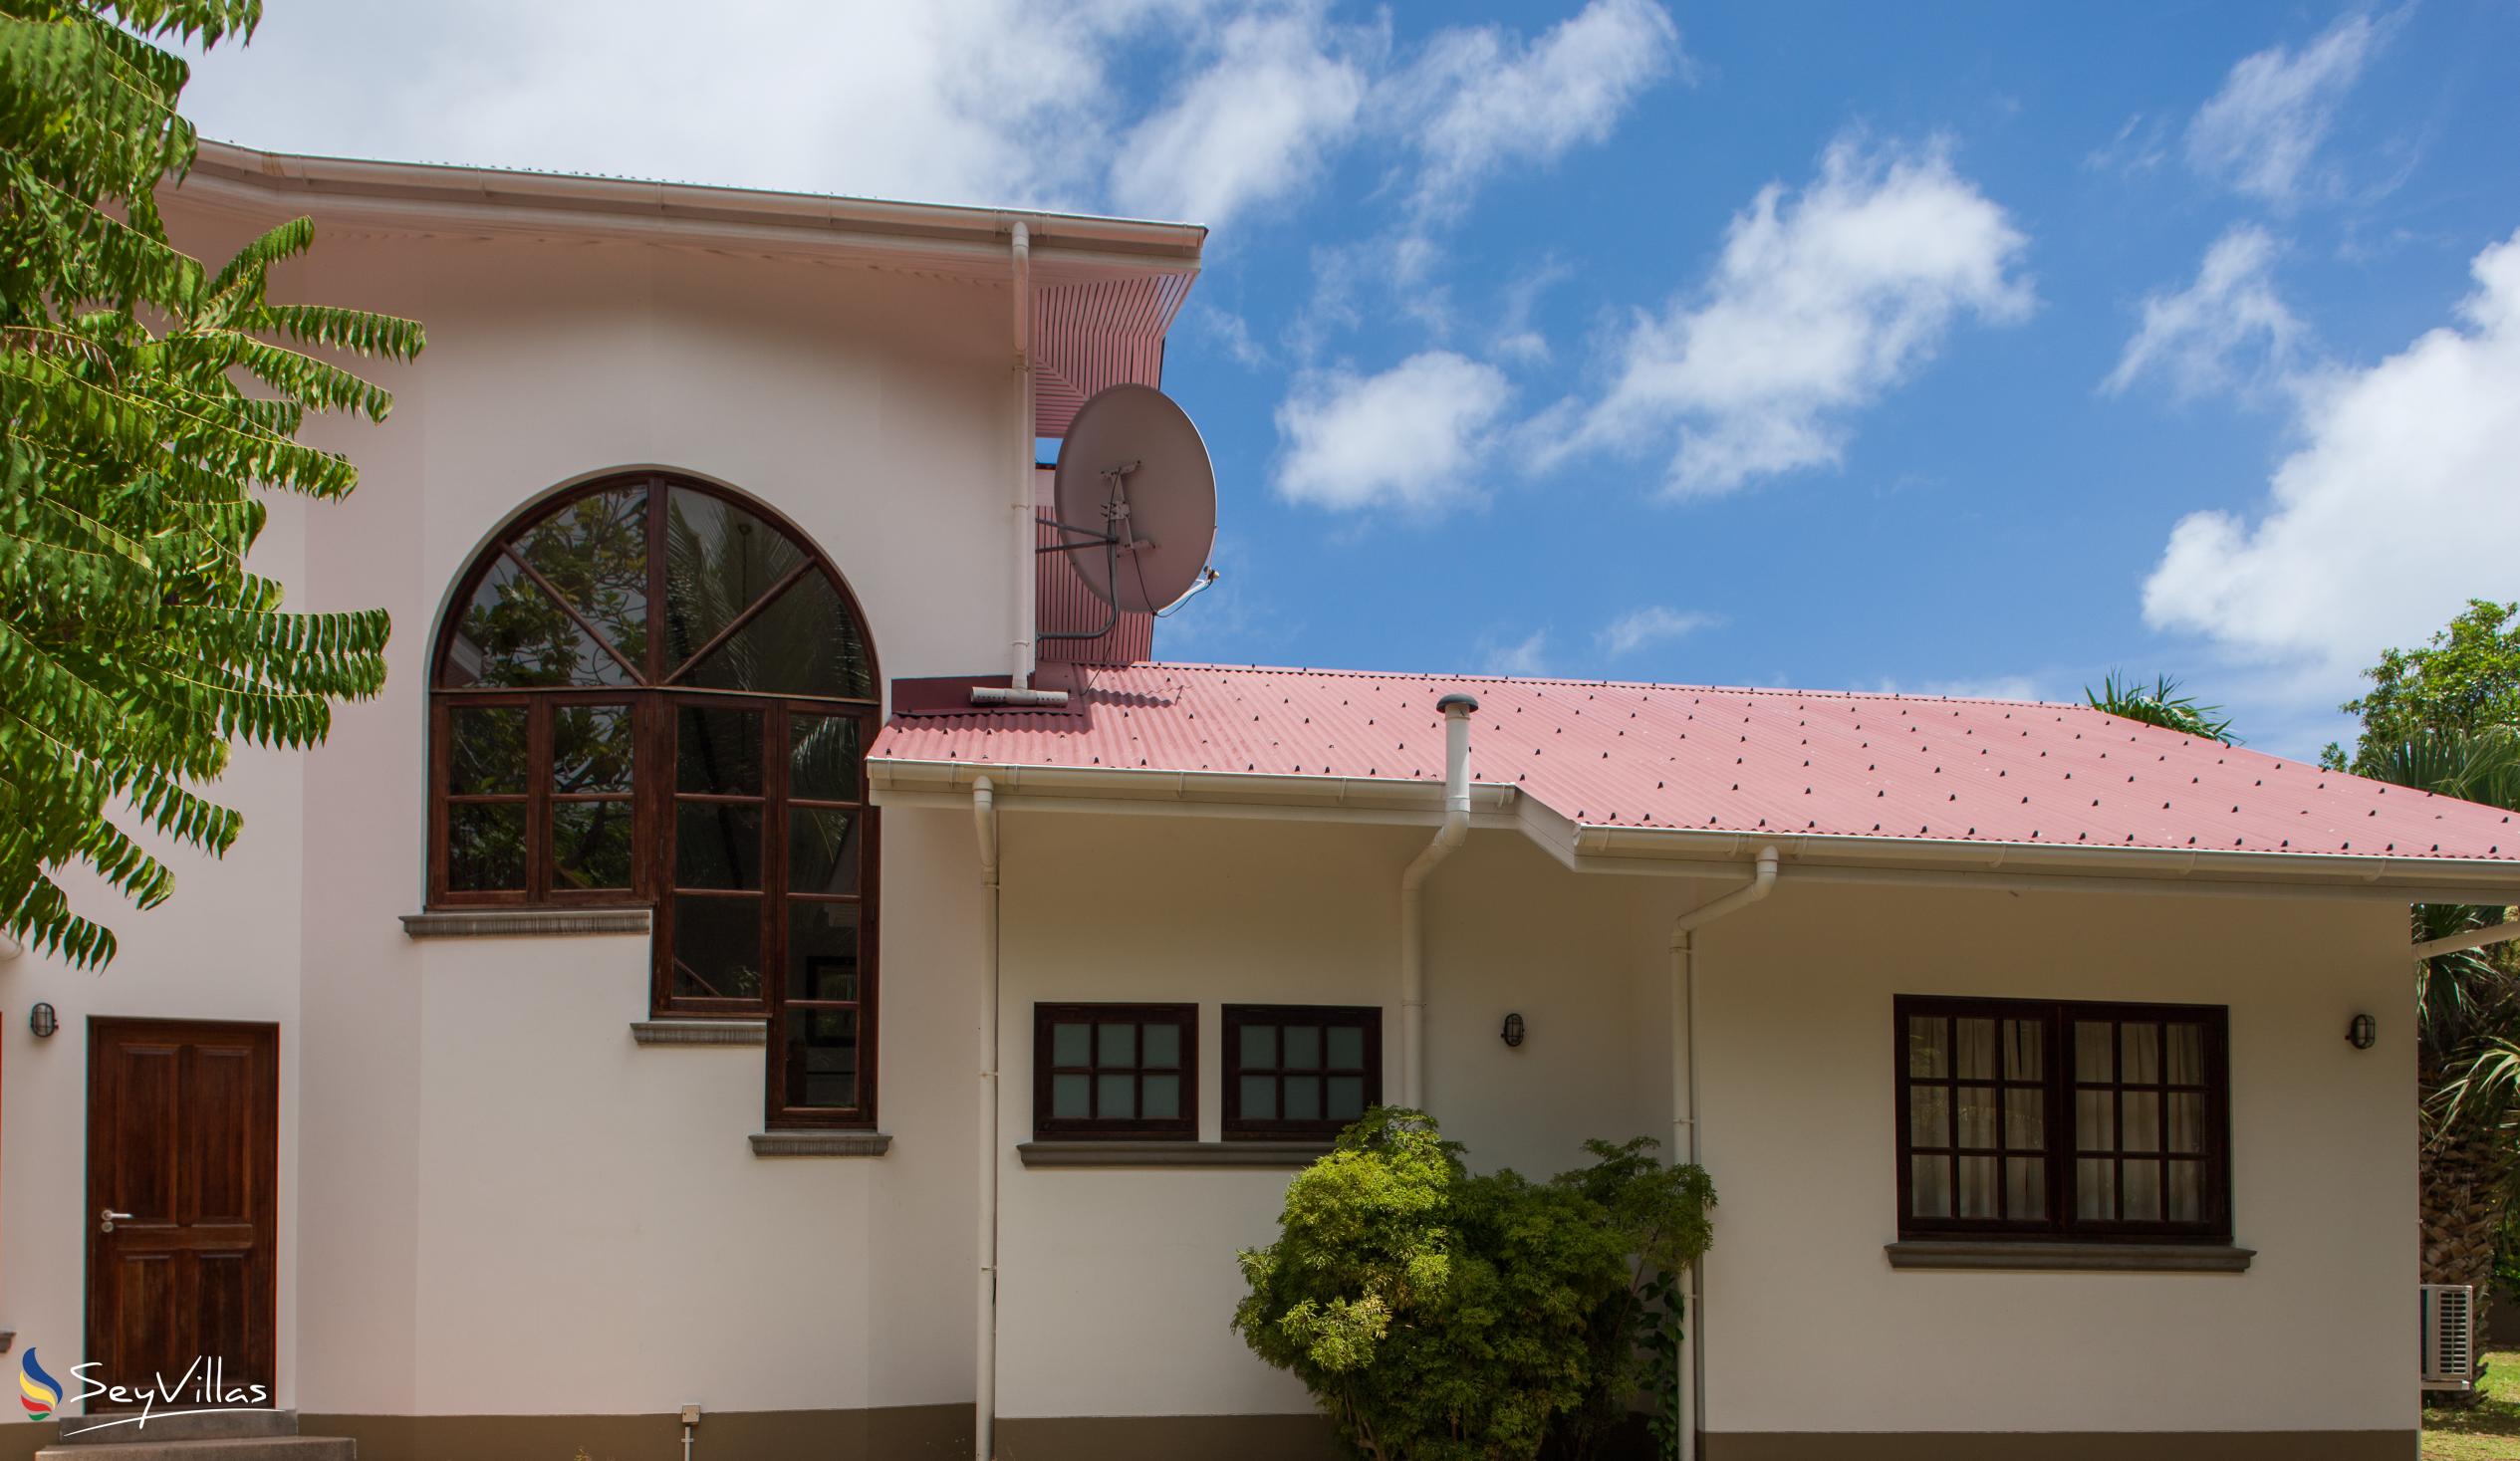 Foto 7: Villa Saint Sauveur - Aussenbereich - Praslin (Seychellen)